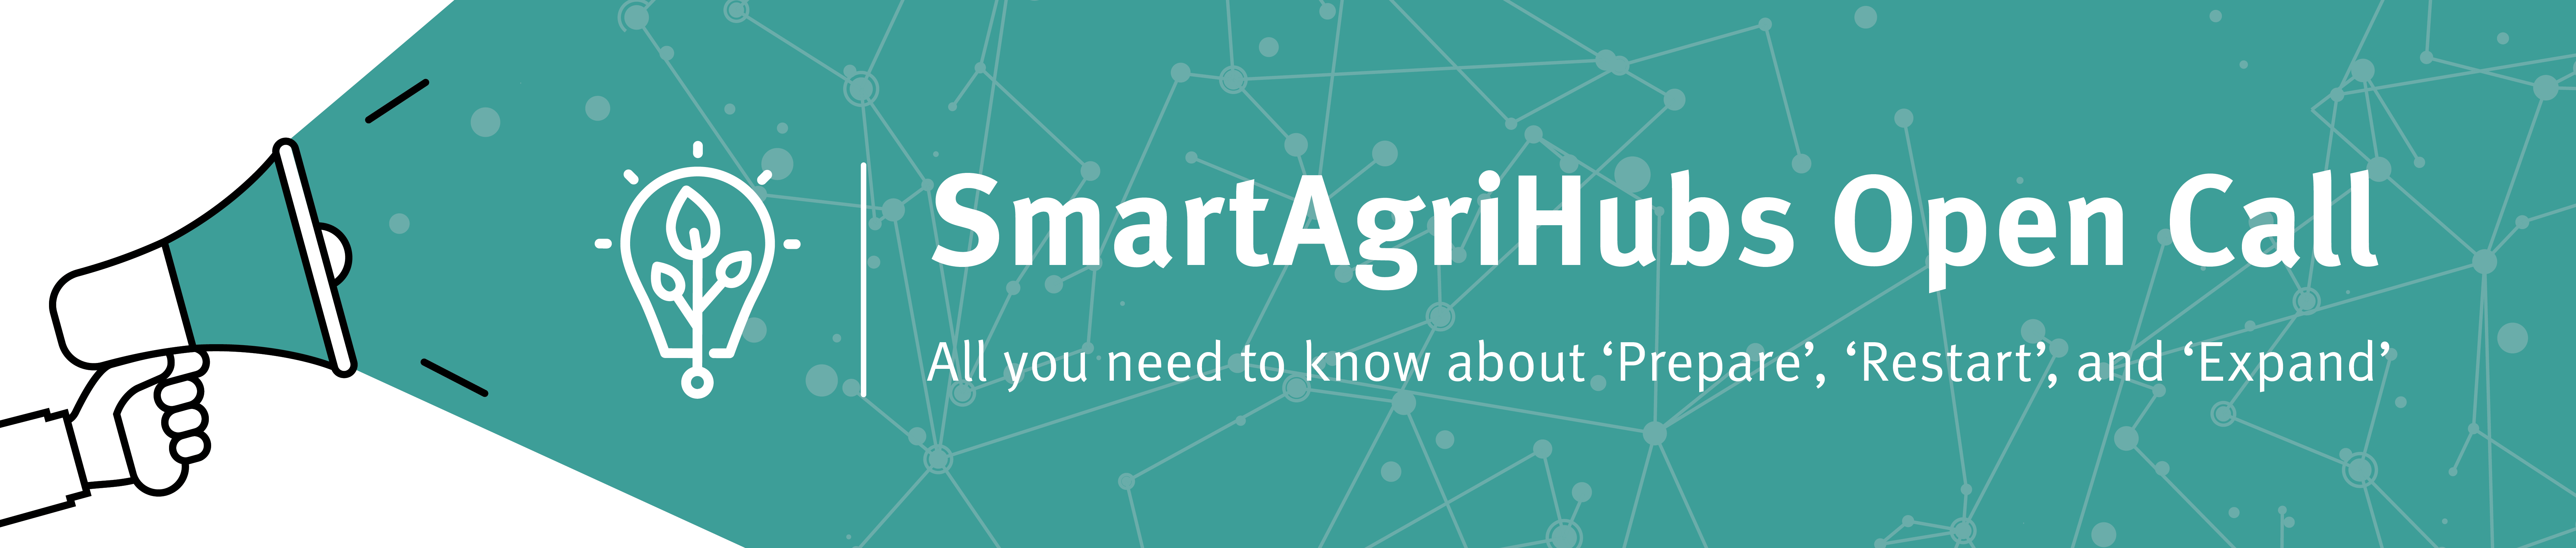 Smartagrihubs Innovation Portal